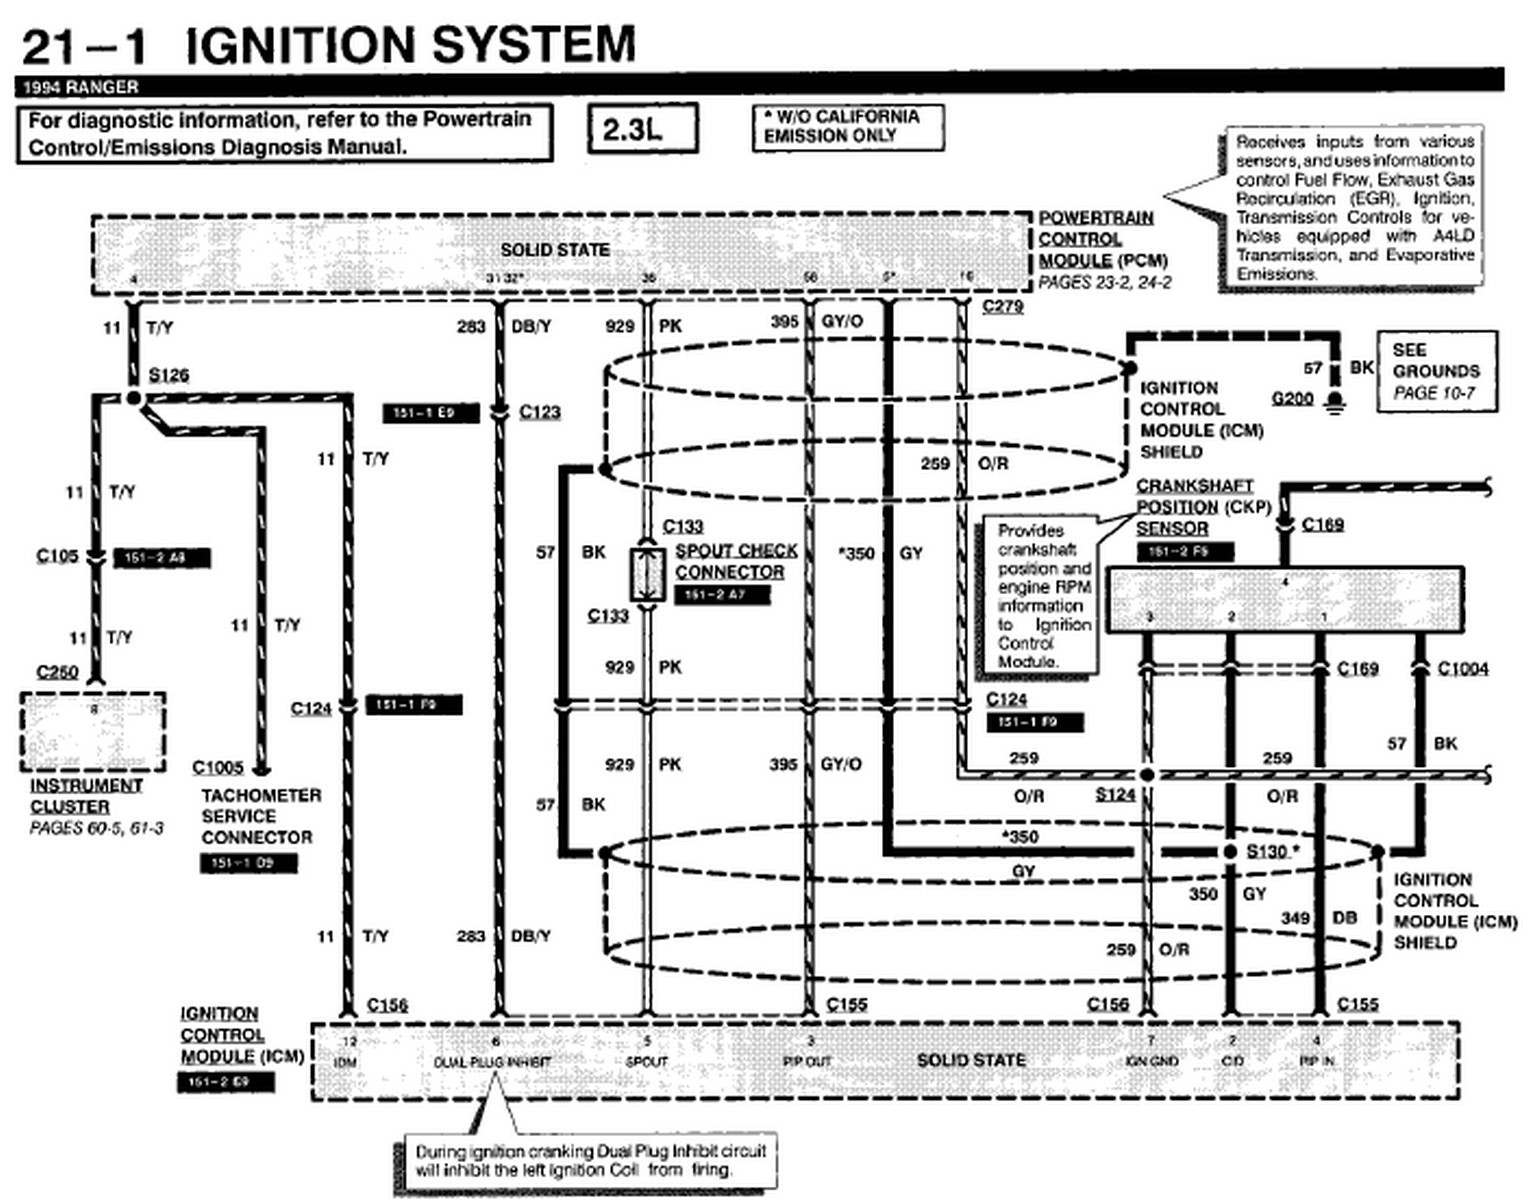 1991 f250 wiring diagram wiring diagram 1991 f250 wiring diagram 1991 ford f250 radio wiring diagram